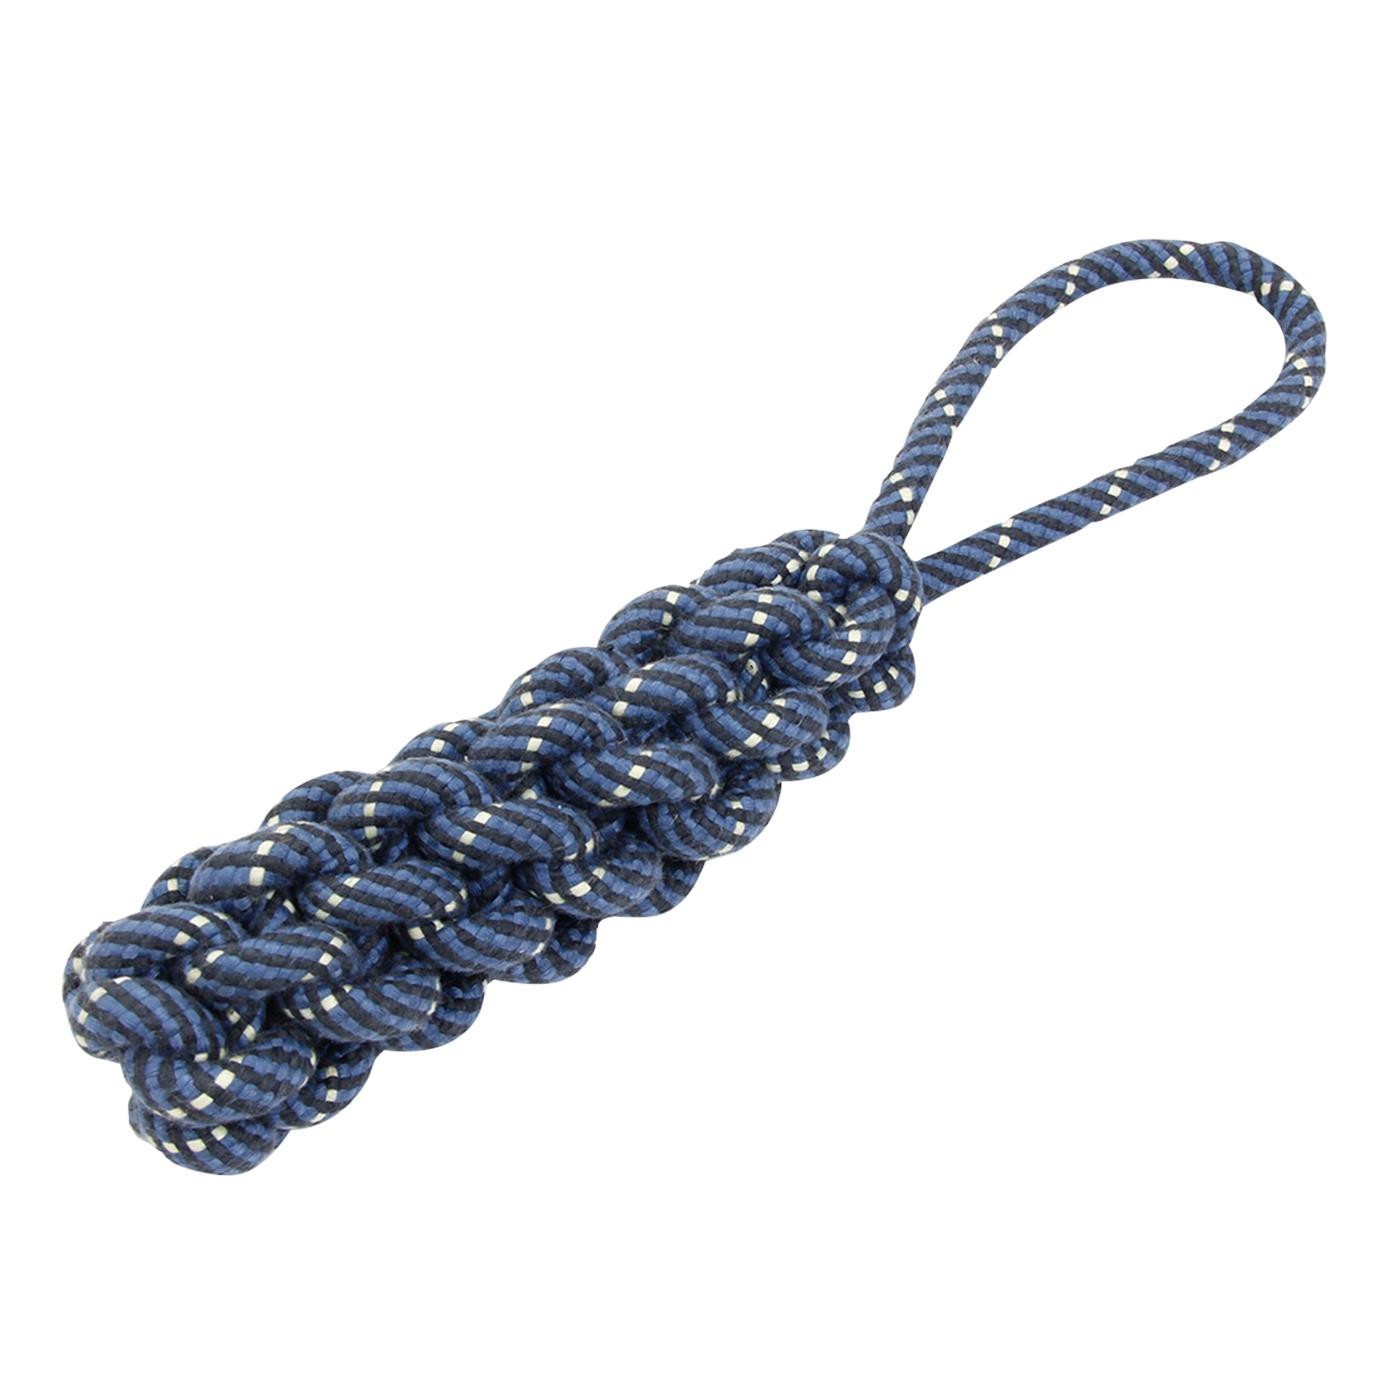 BüD’z Dog Toy Braided Rope, 13.5”